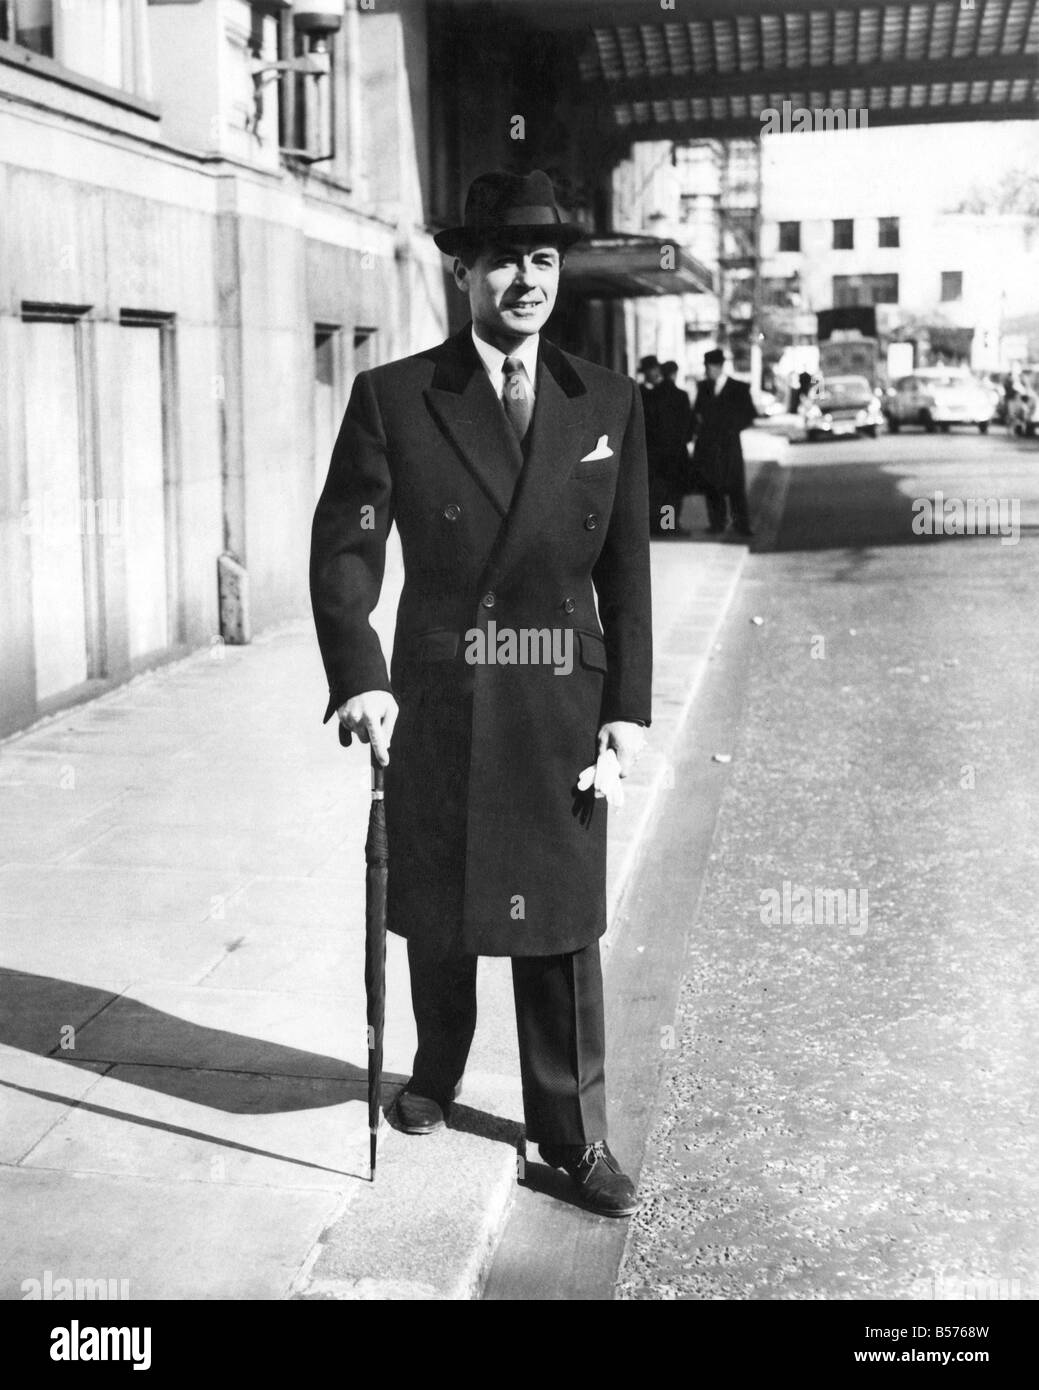 Kleidung Herren Mode: dieser Mantel Zweireiher Stadt ist in schwarz. Twill  Lammwolle überstreichen. März 1959 P005236 Stockfotografie - Alamy